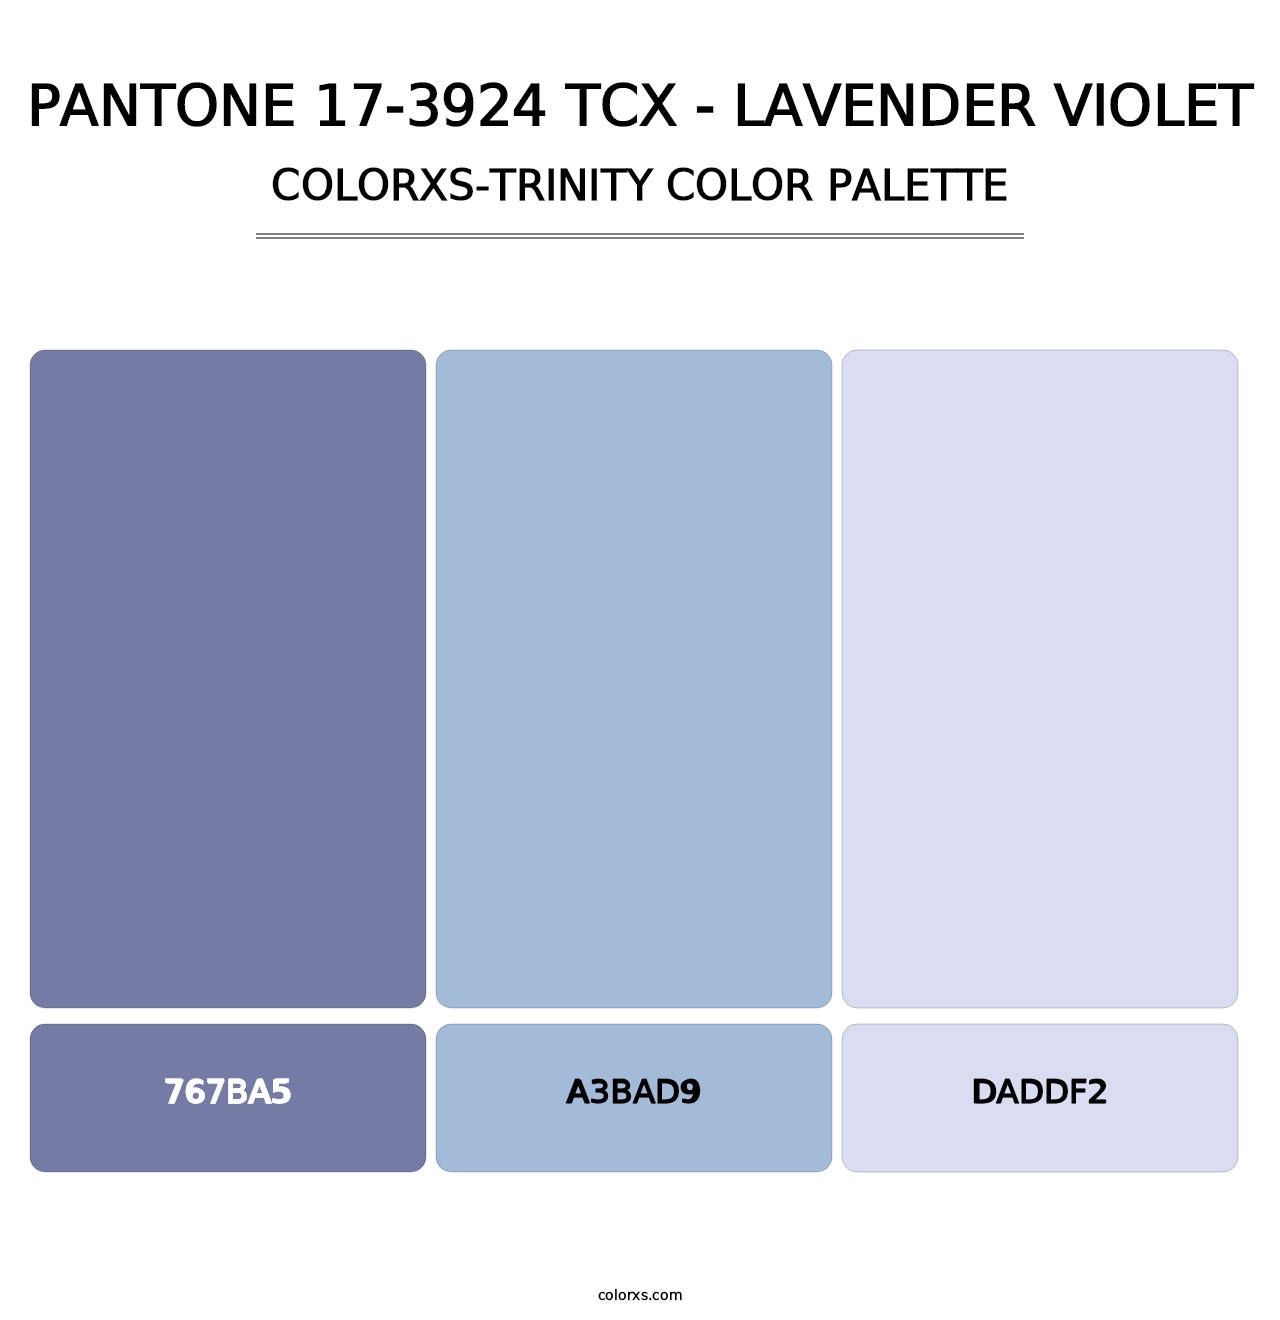 PANTONE 17-3924 TCX - Lavender Violet - Colorxs Trinity Palette